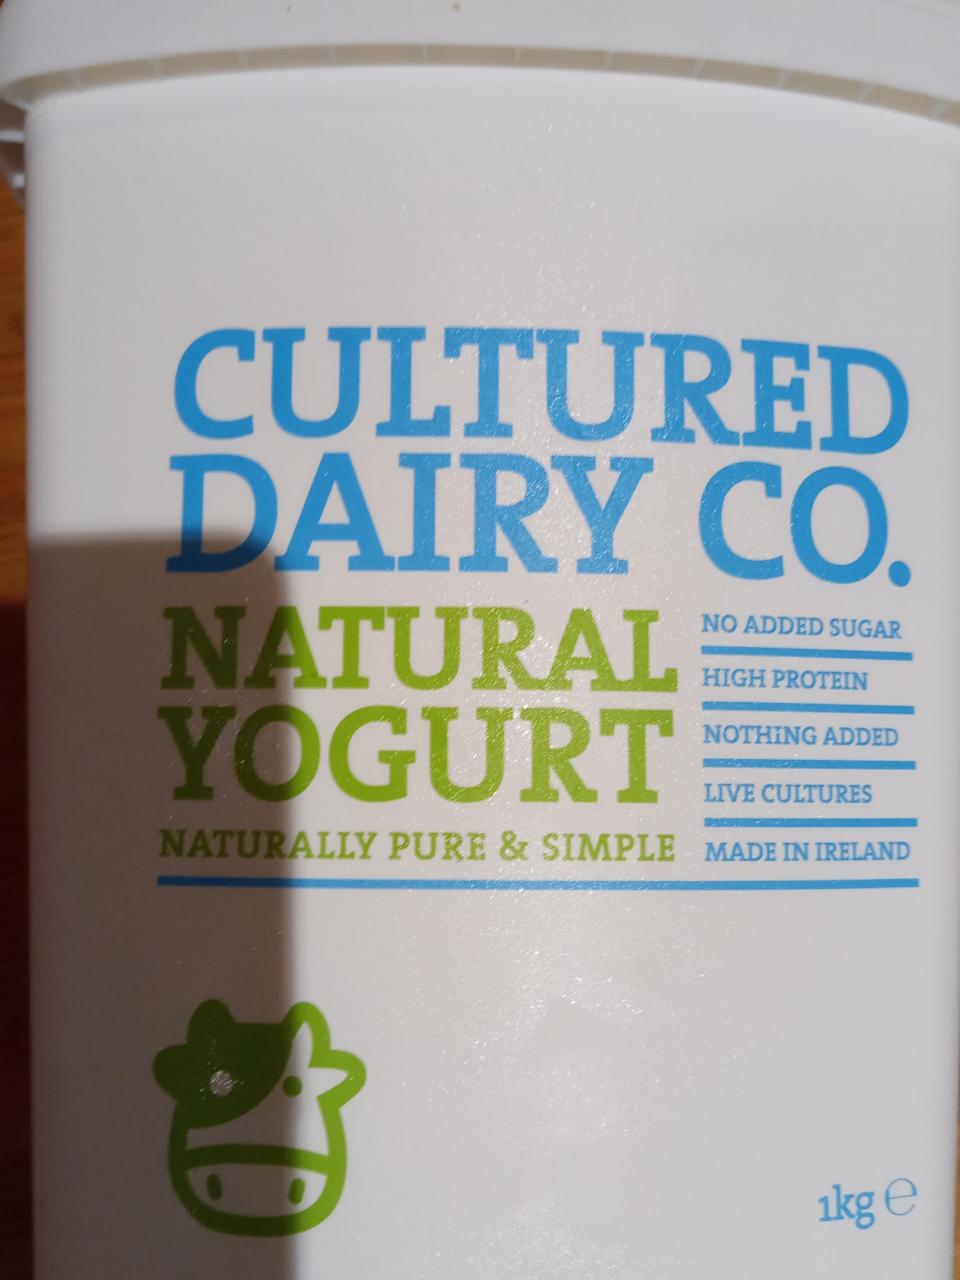 Fotografie - Natural Yogurt Cultured Dairy Co.